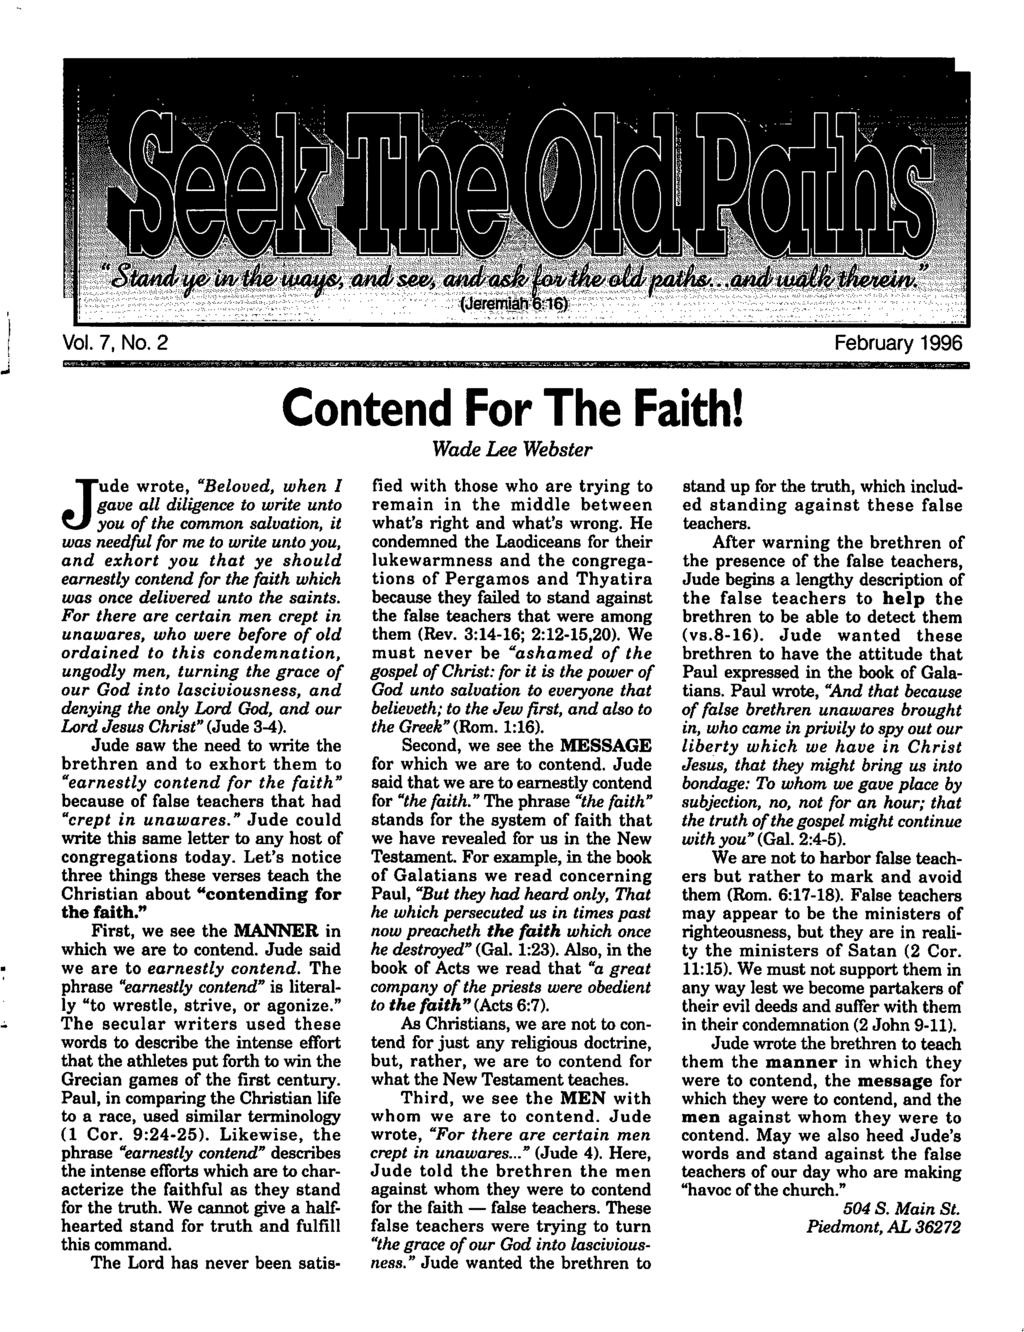 Vl. 7, N. 2 February 1996 Cntend Fr The Faith!